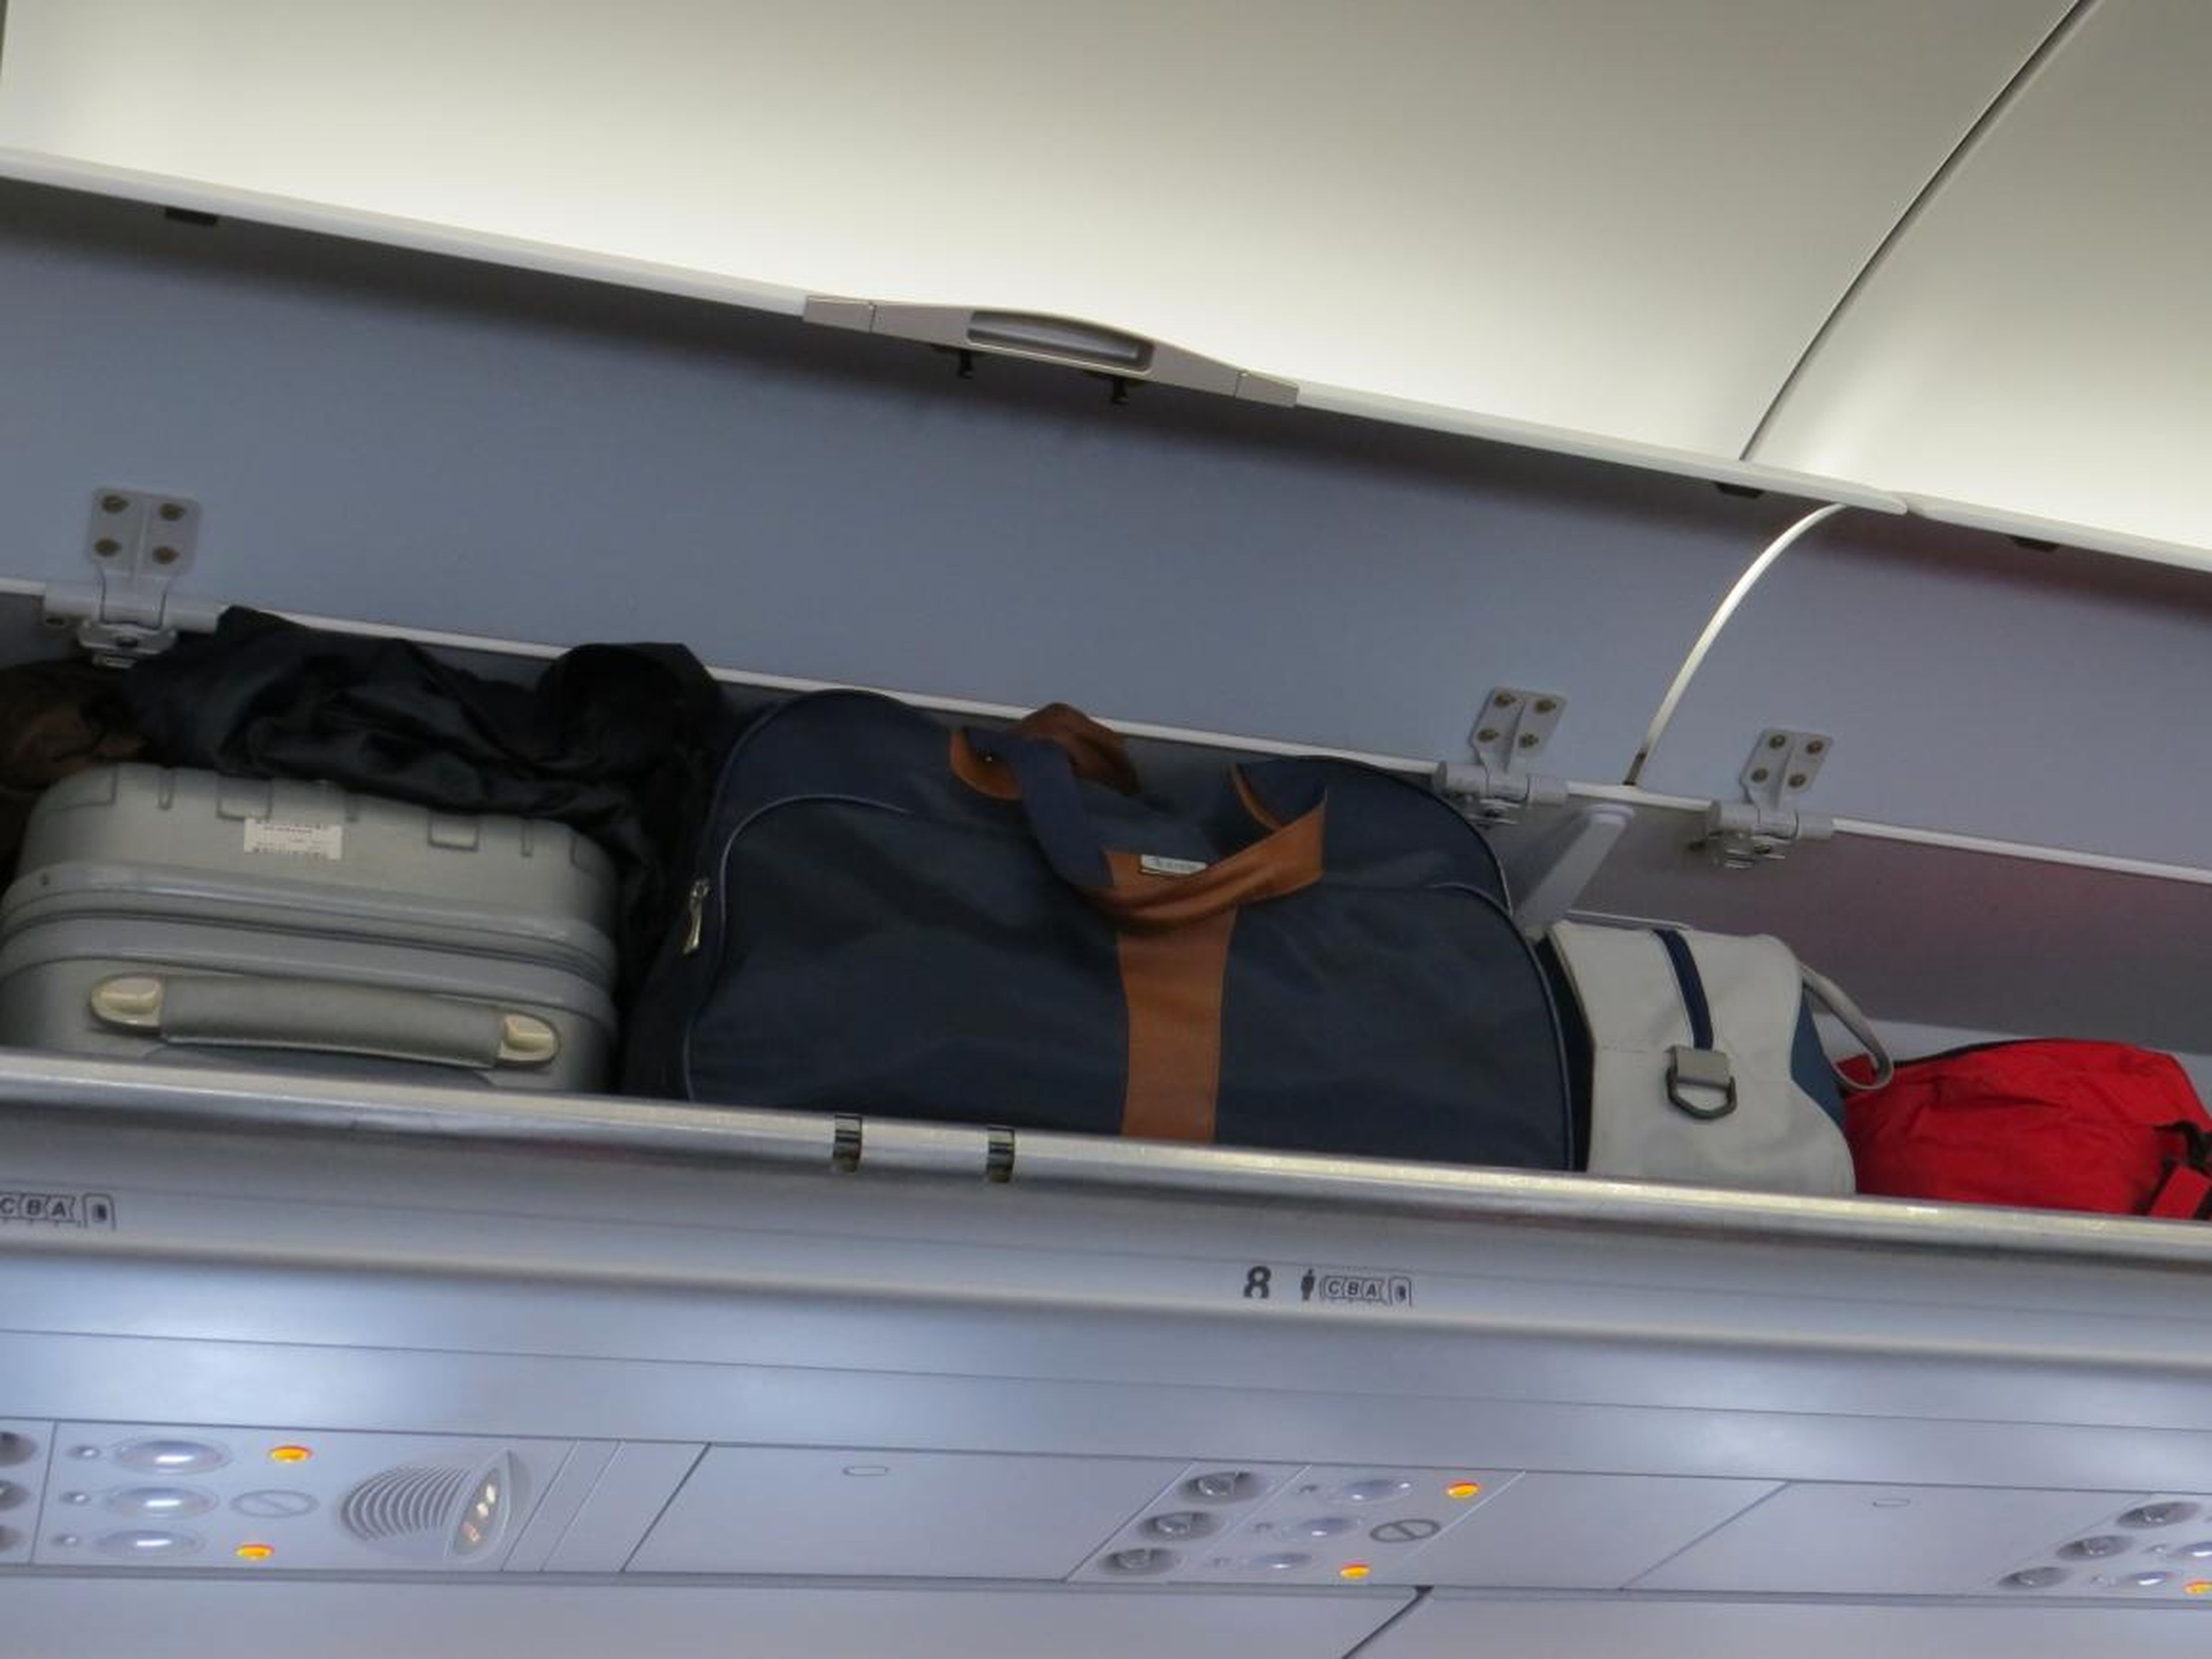 Coge lo que necesites de tu equipaje antes de que el avión despegue.